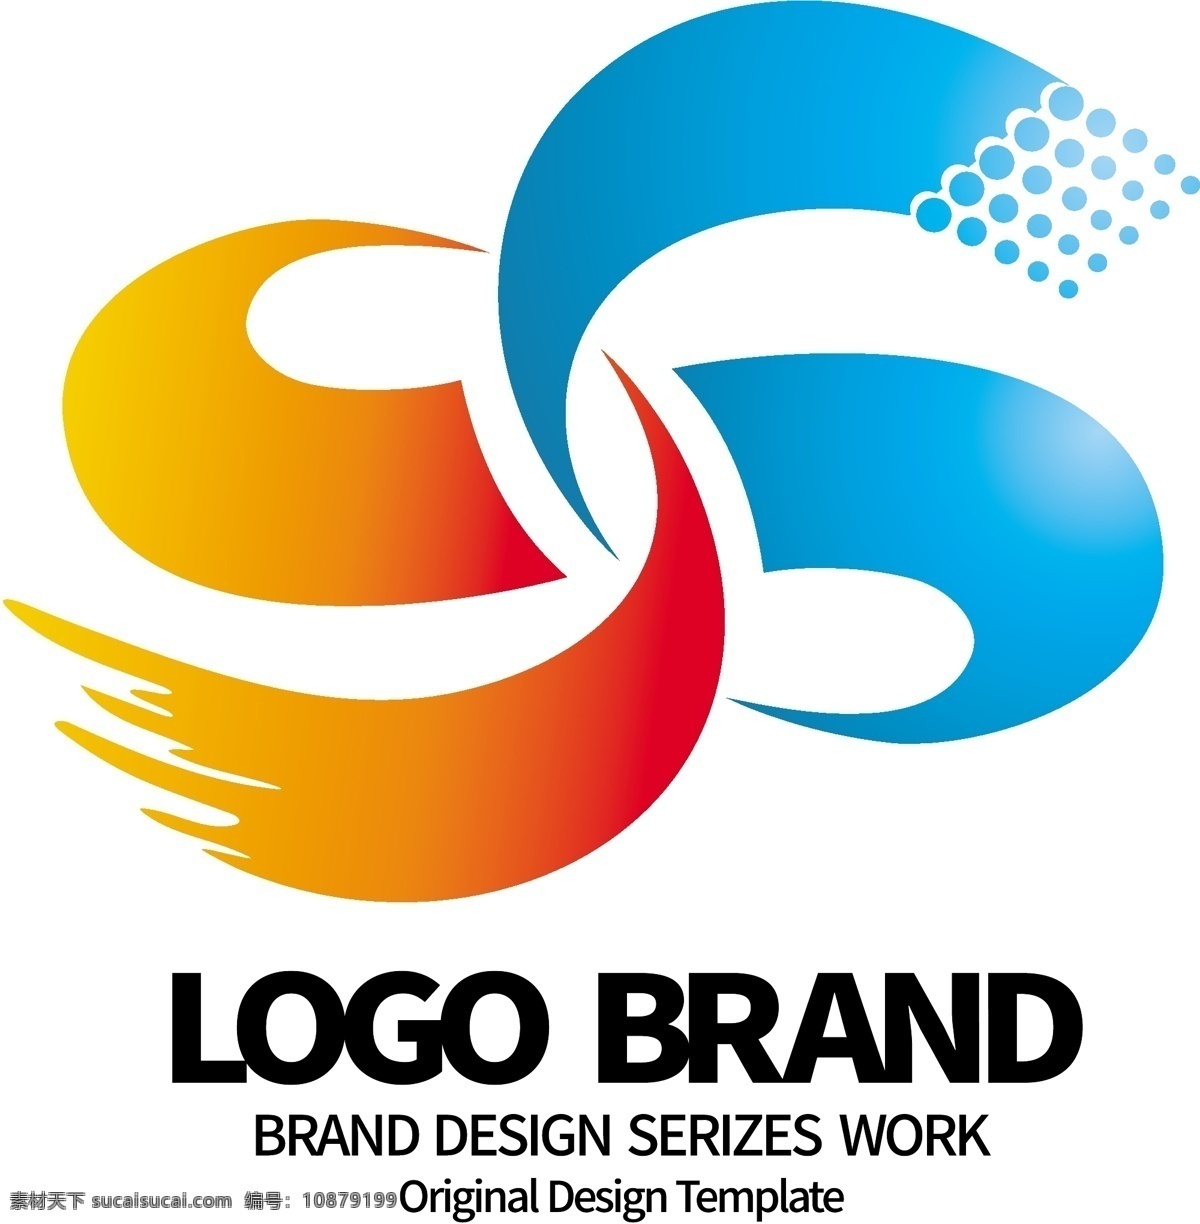 大气 红蓝 飘带 s 字母 运动会 logo 标志设计 g 标志 公司 公司标志设计 企业 会徽标志设计 企业标志设计